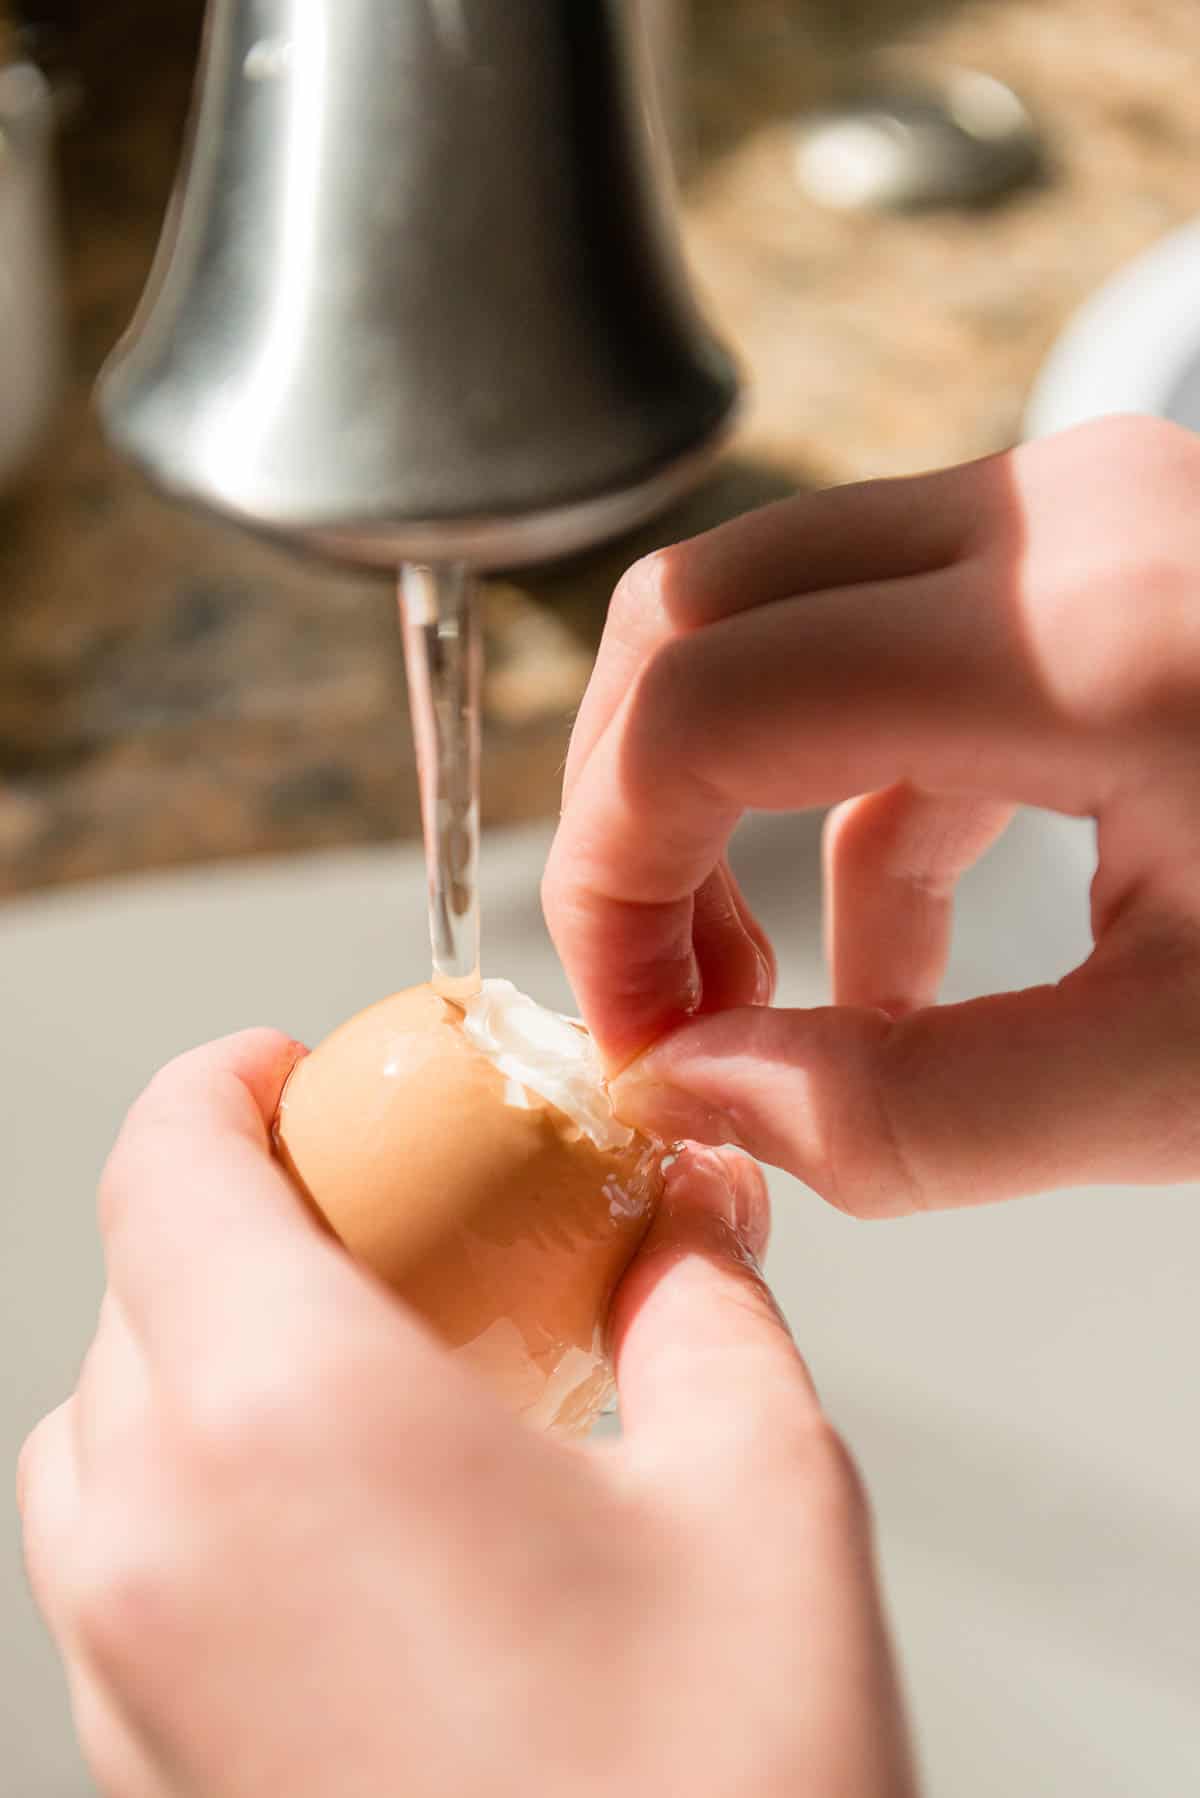 peeling hard boiled egg under running water.